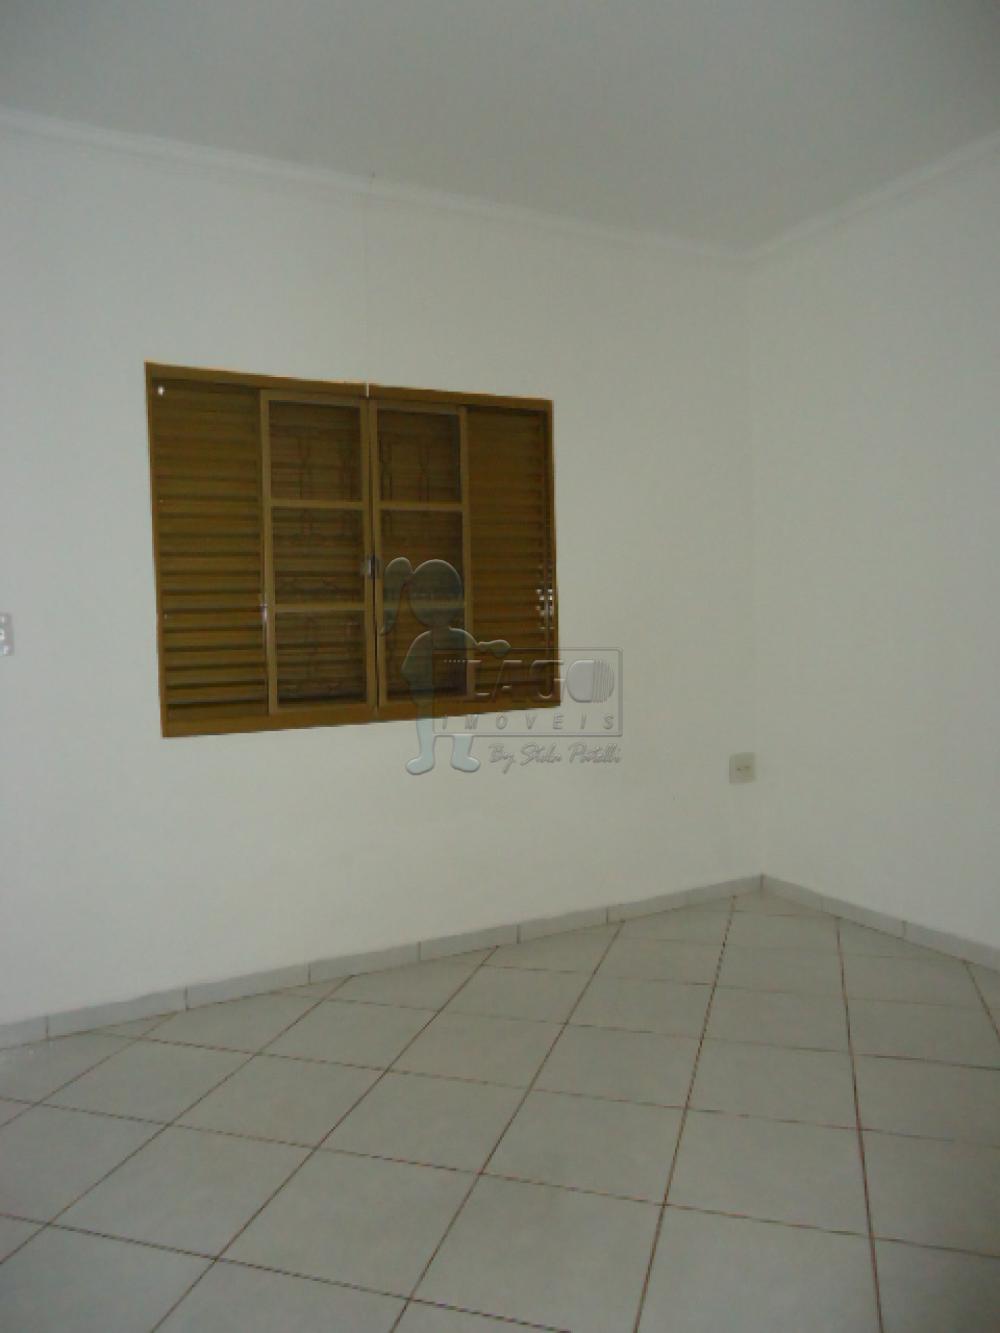 Comprar Casas / Padrão em Ribeirão Preto R$ 490.000,00 - Foto 17